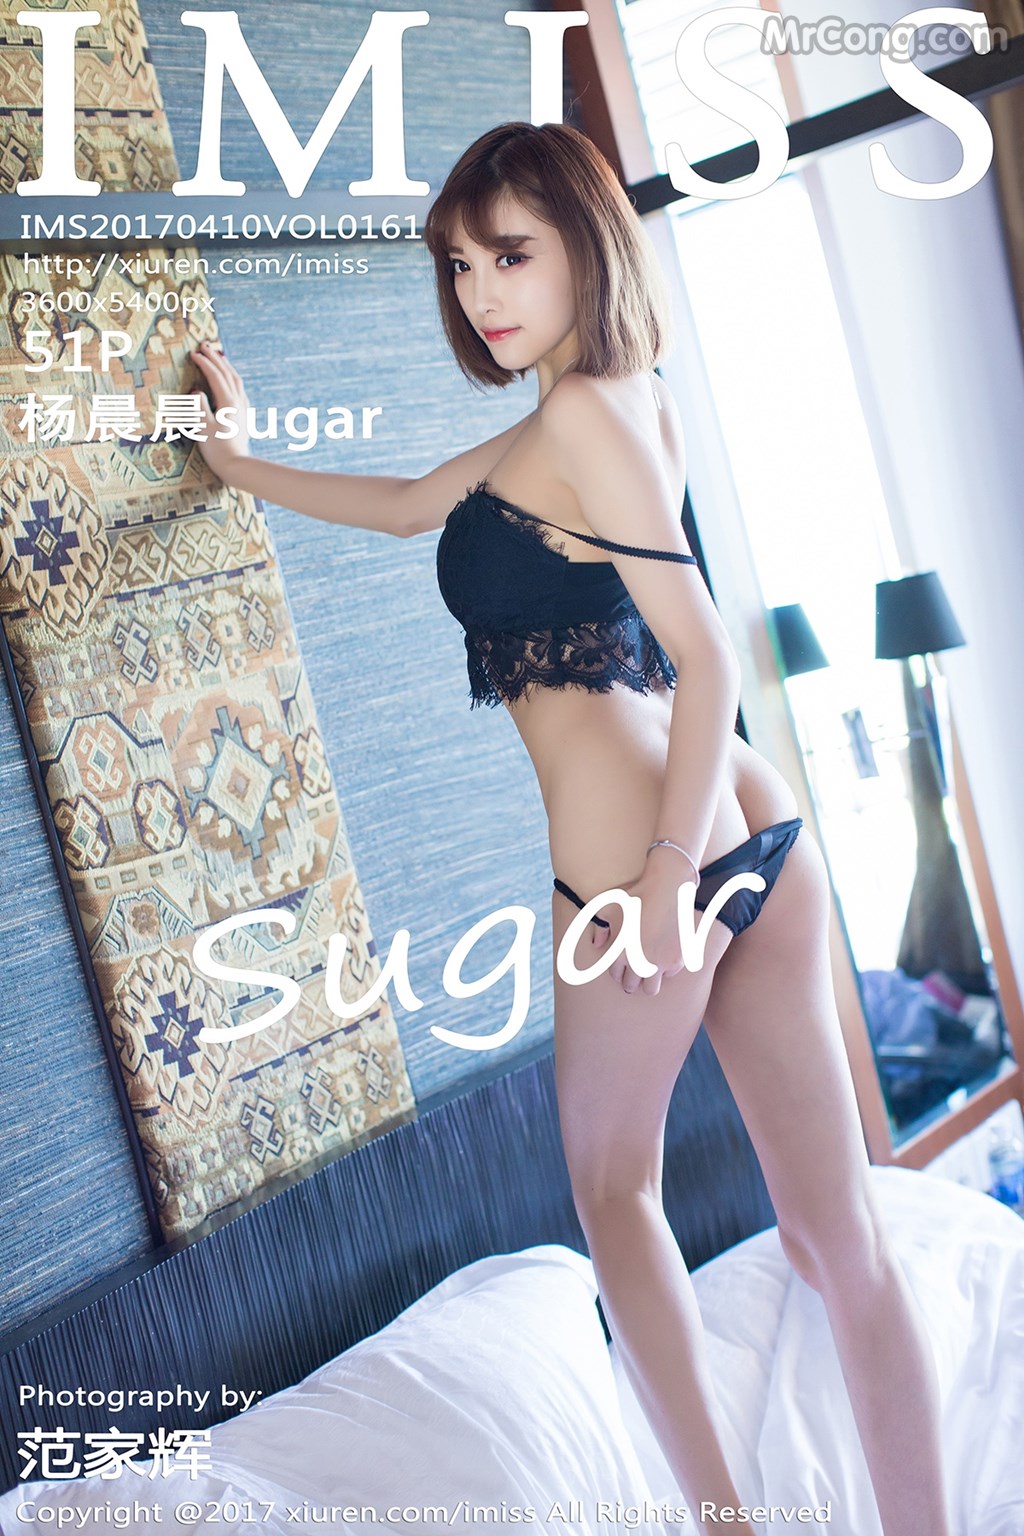 IMISS Vol.161: Model Yang Chen Chen (杨晨晨 sugar) (52 photos) photo 1-0